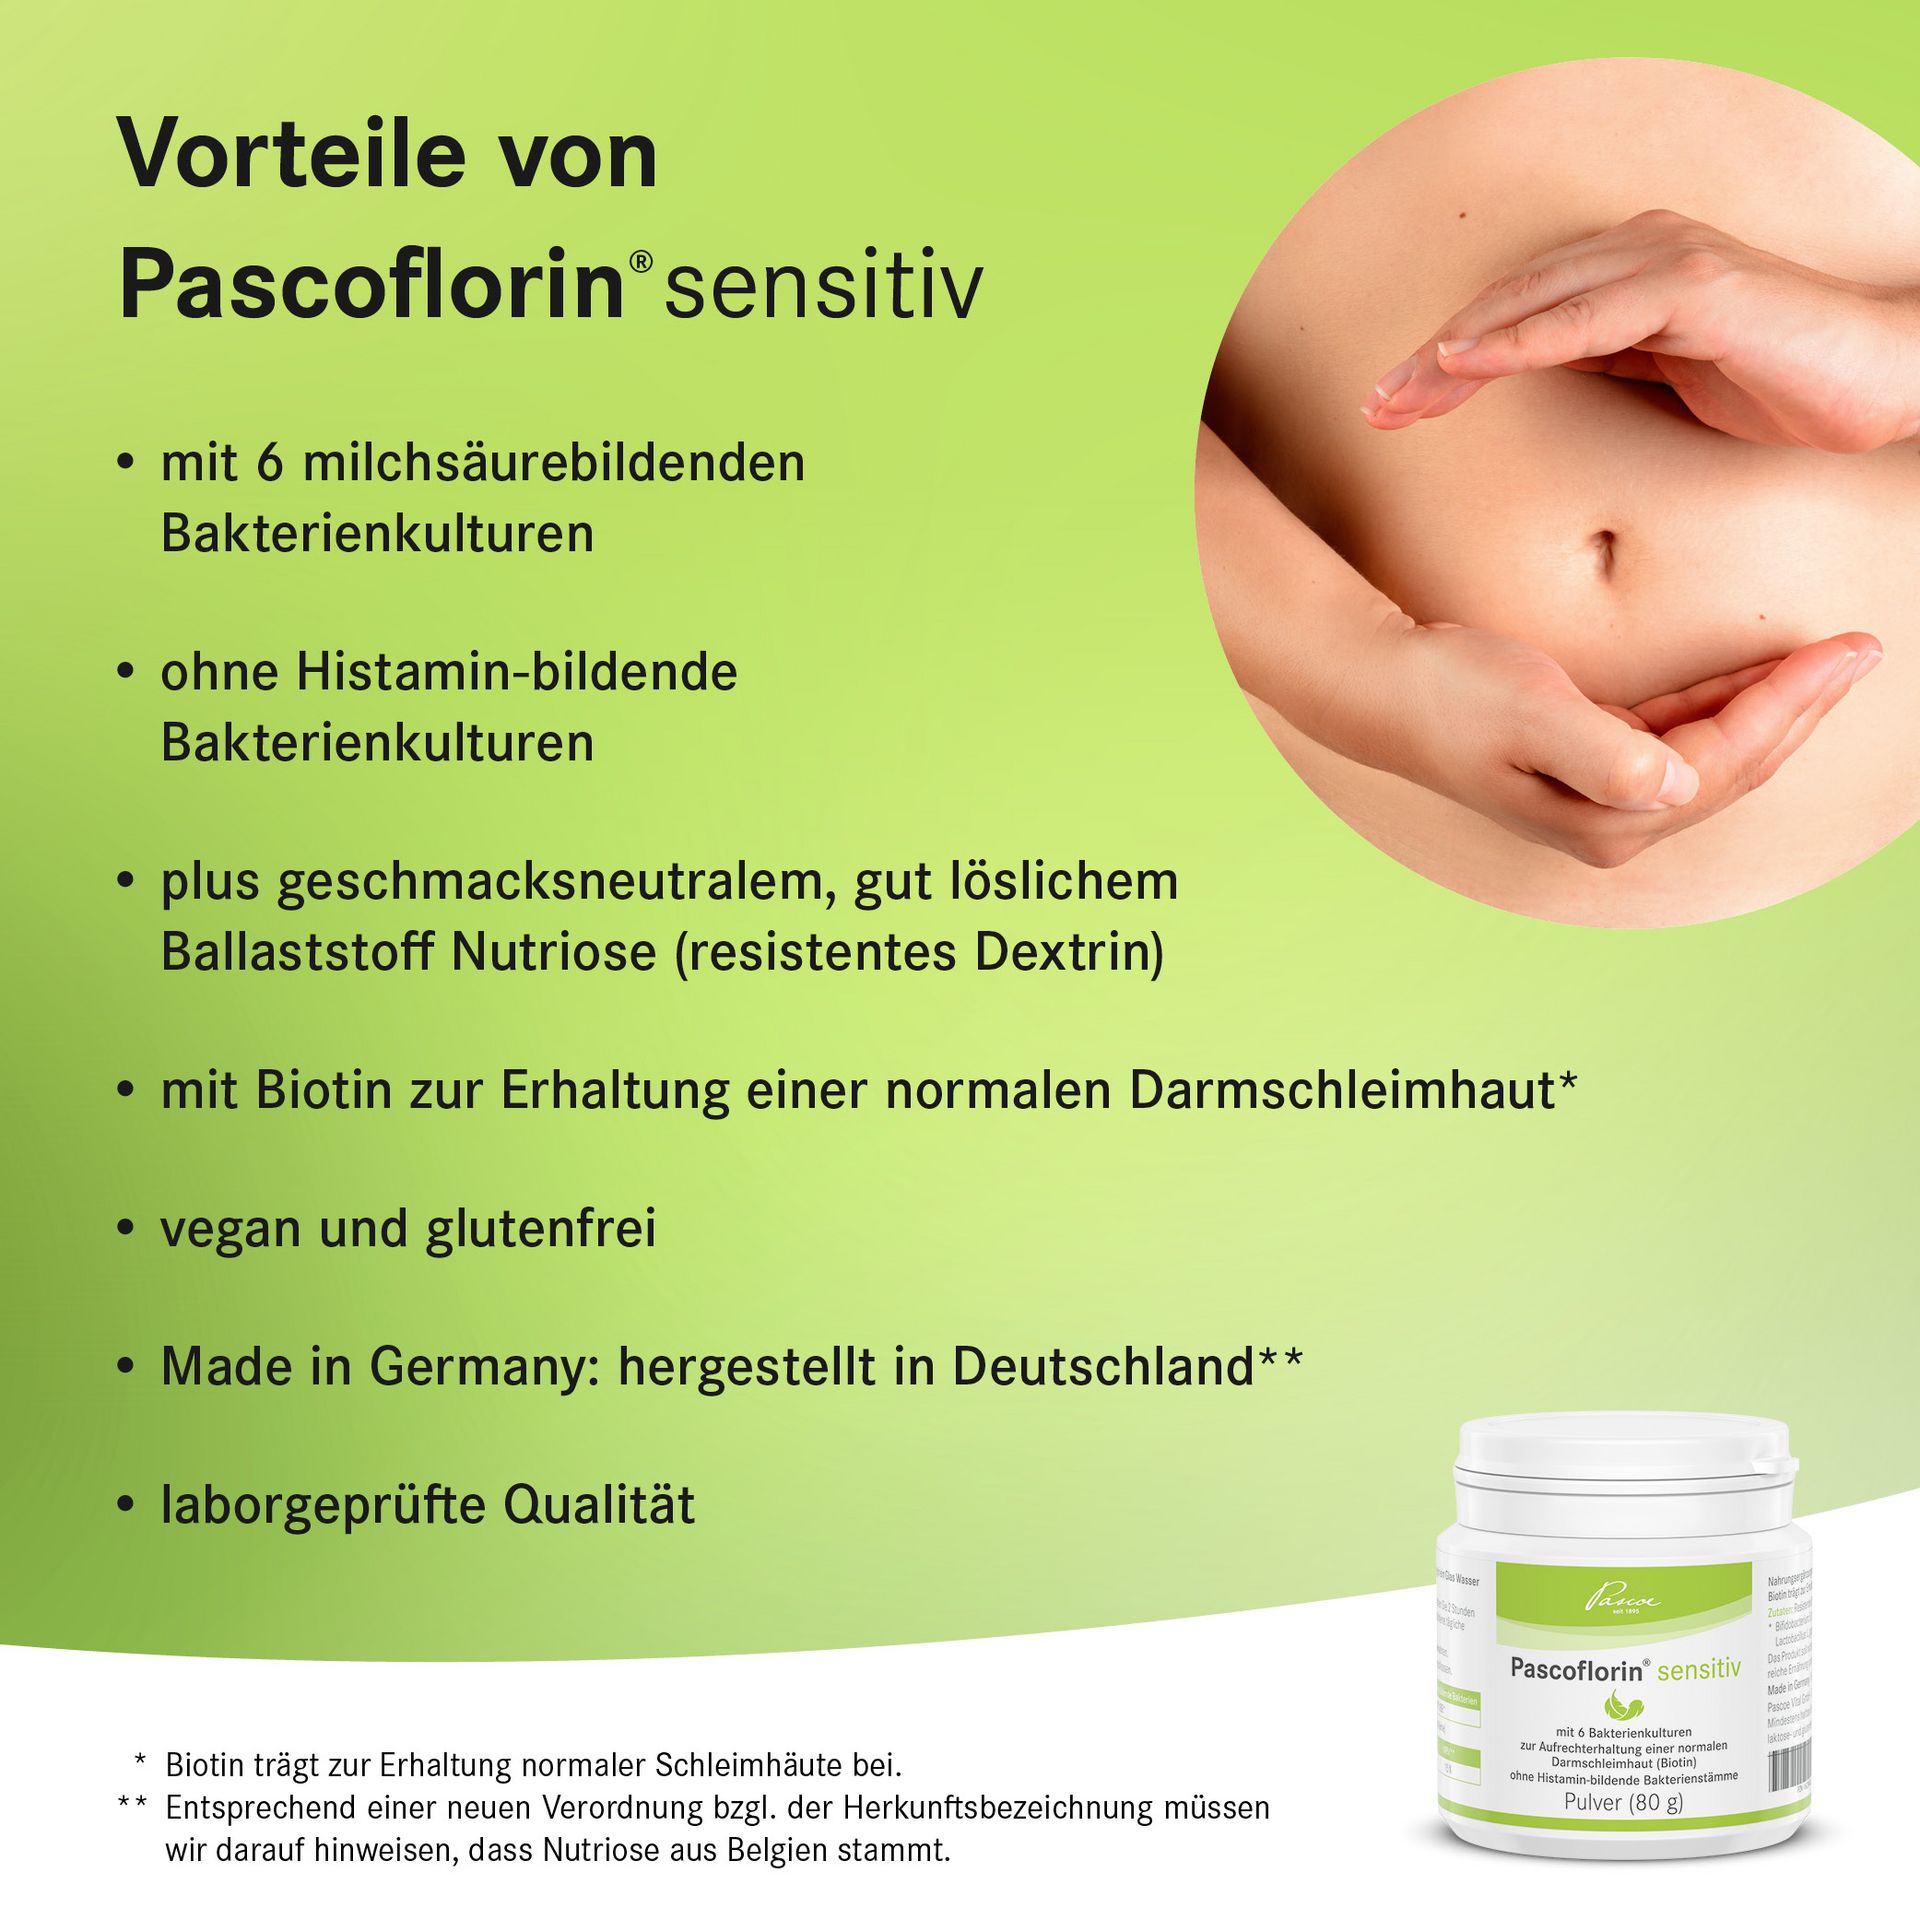 Auflistung der Vorteile von Pascoflorin sensitiv mit KeyVisual